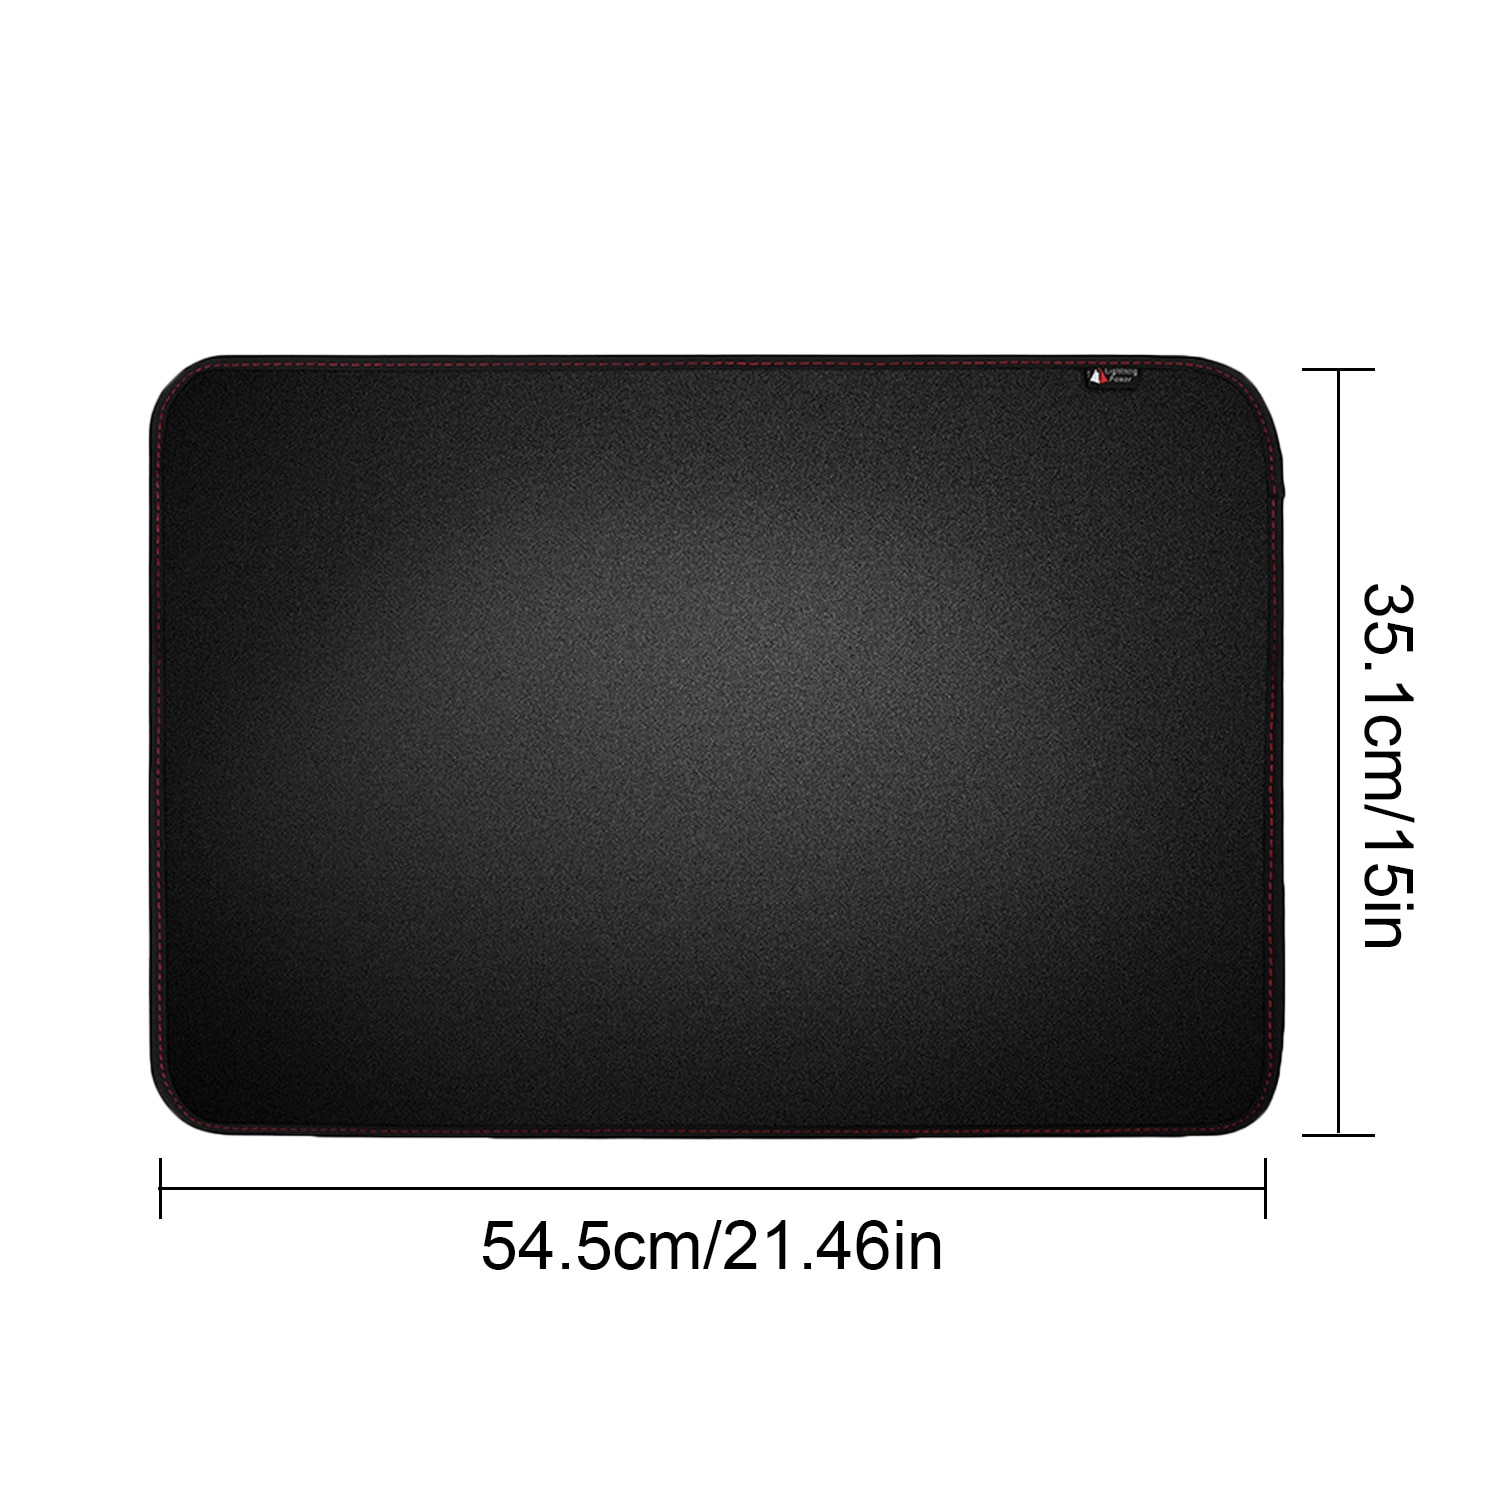 Waterdicht Stofdicht Soft Cover Protector Met Zakken Voor 21Inch Apple Imac Lcd Screen Computer Monitor Stofkap Zwart